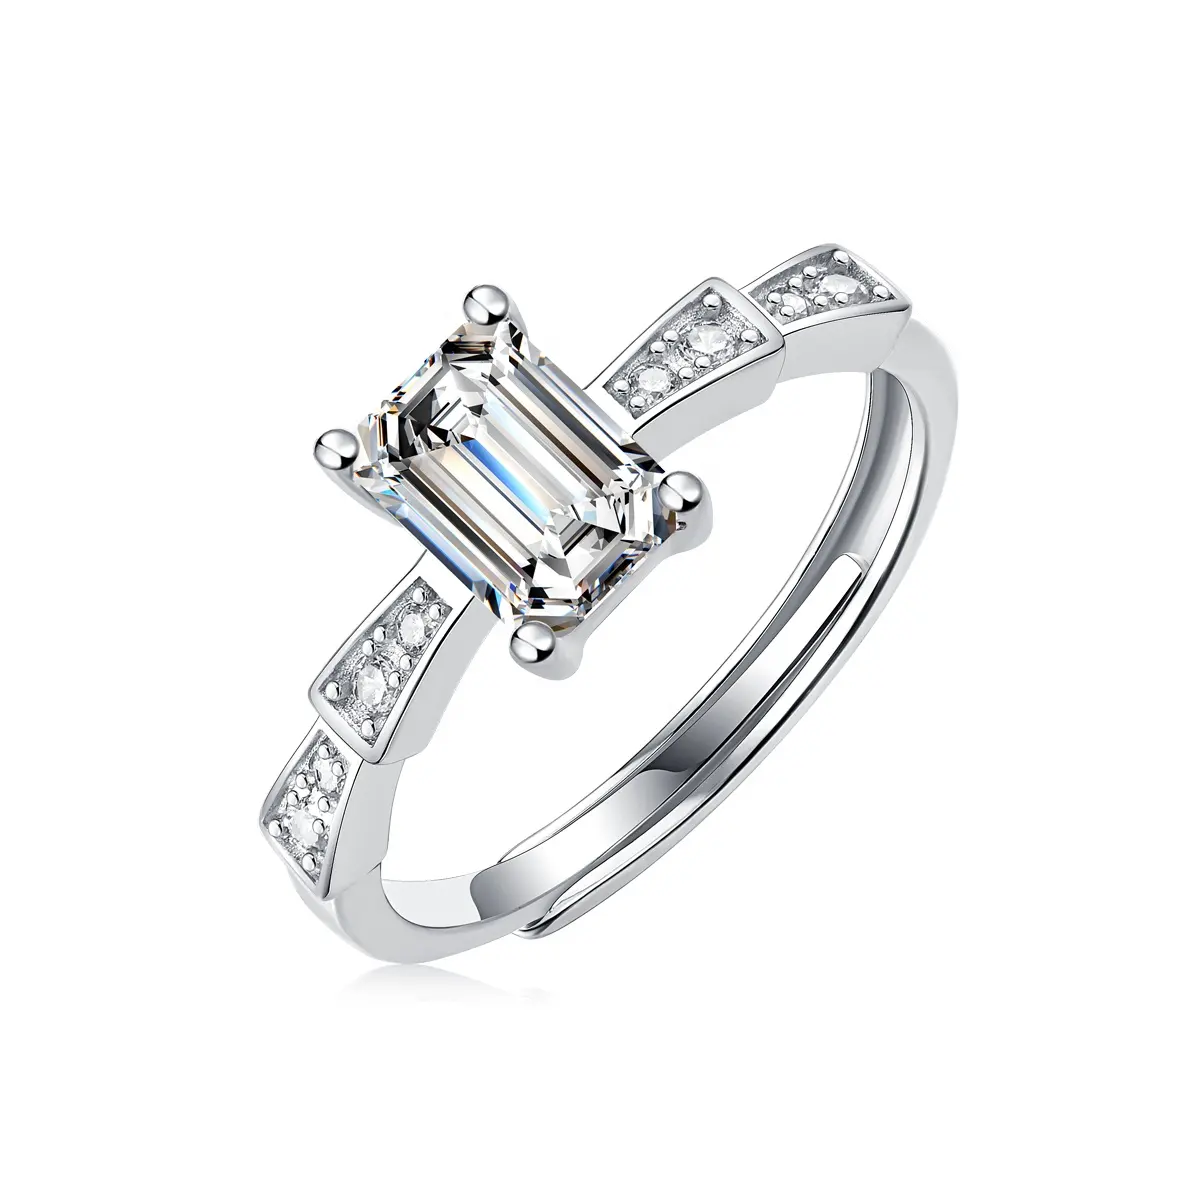 Scène Trendy Rechthoekige Vorm Vrouwen Trouwringen Sieraden 925 Zilveren Diamanten Ringen Voor Verlovingsgeschenk